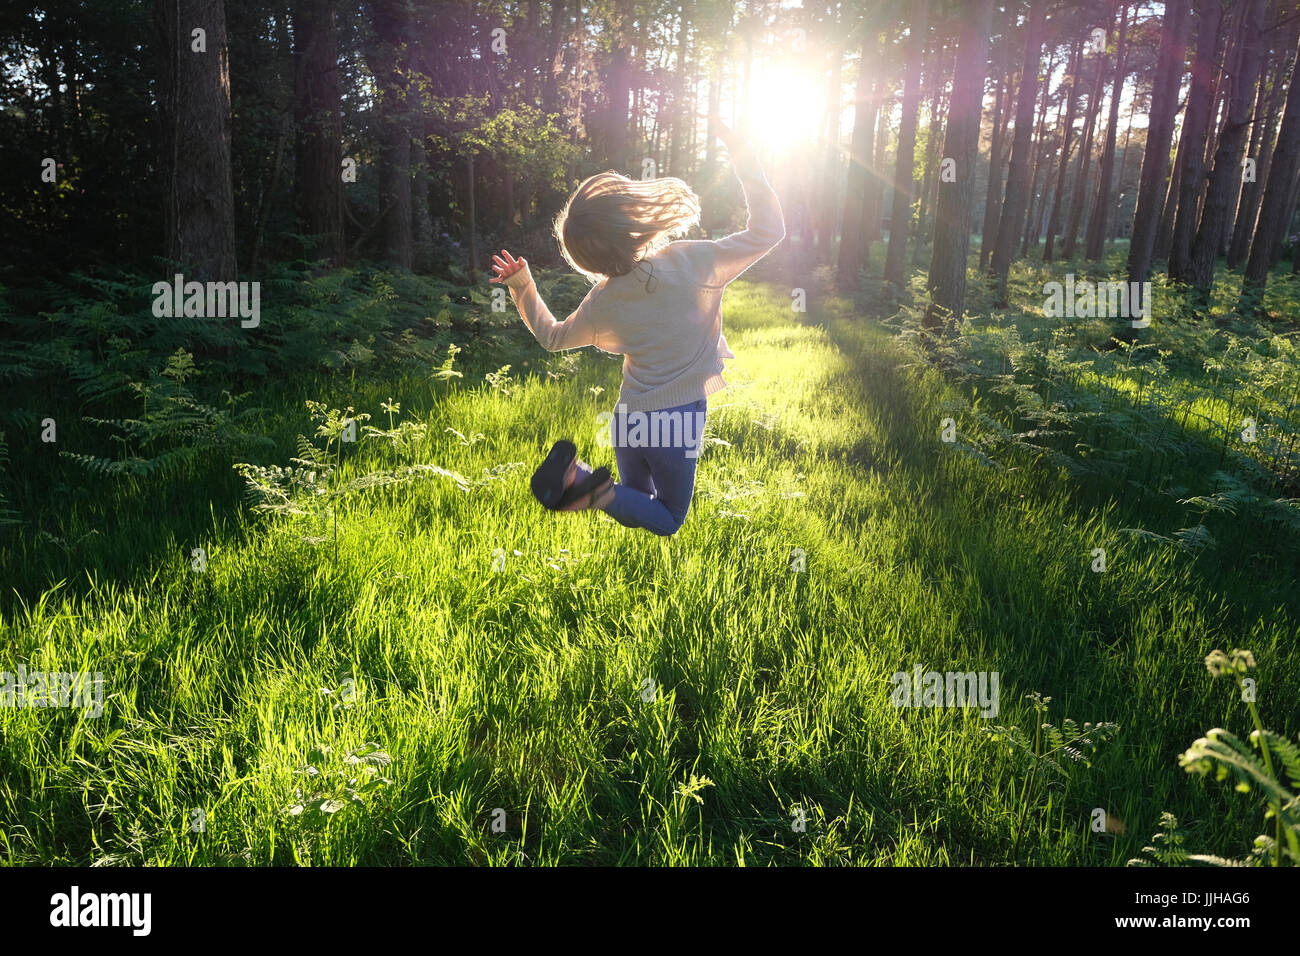 Ein junges Mädchen springen vor Freude in einem sonnendurchfluteten Wald. Stockfoto